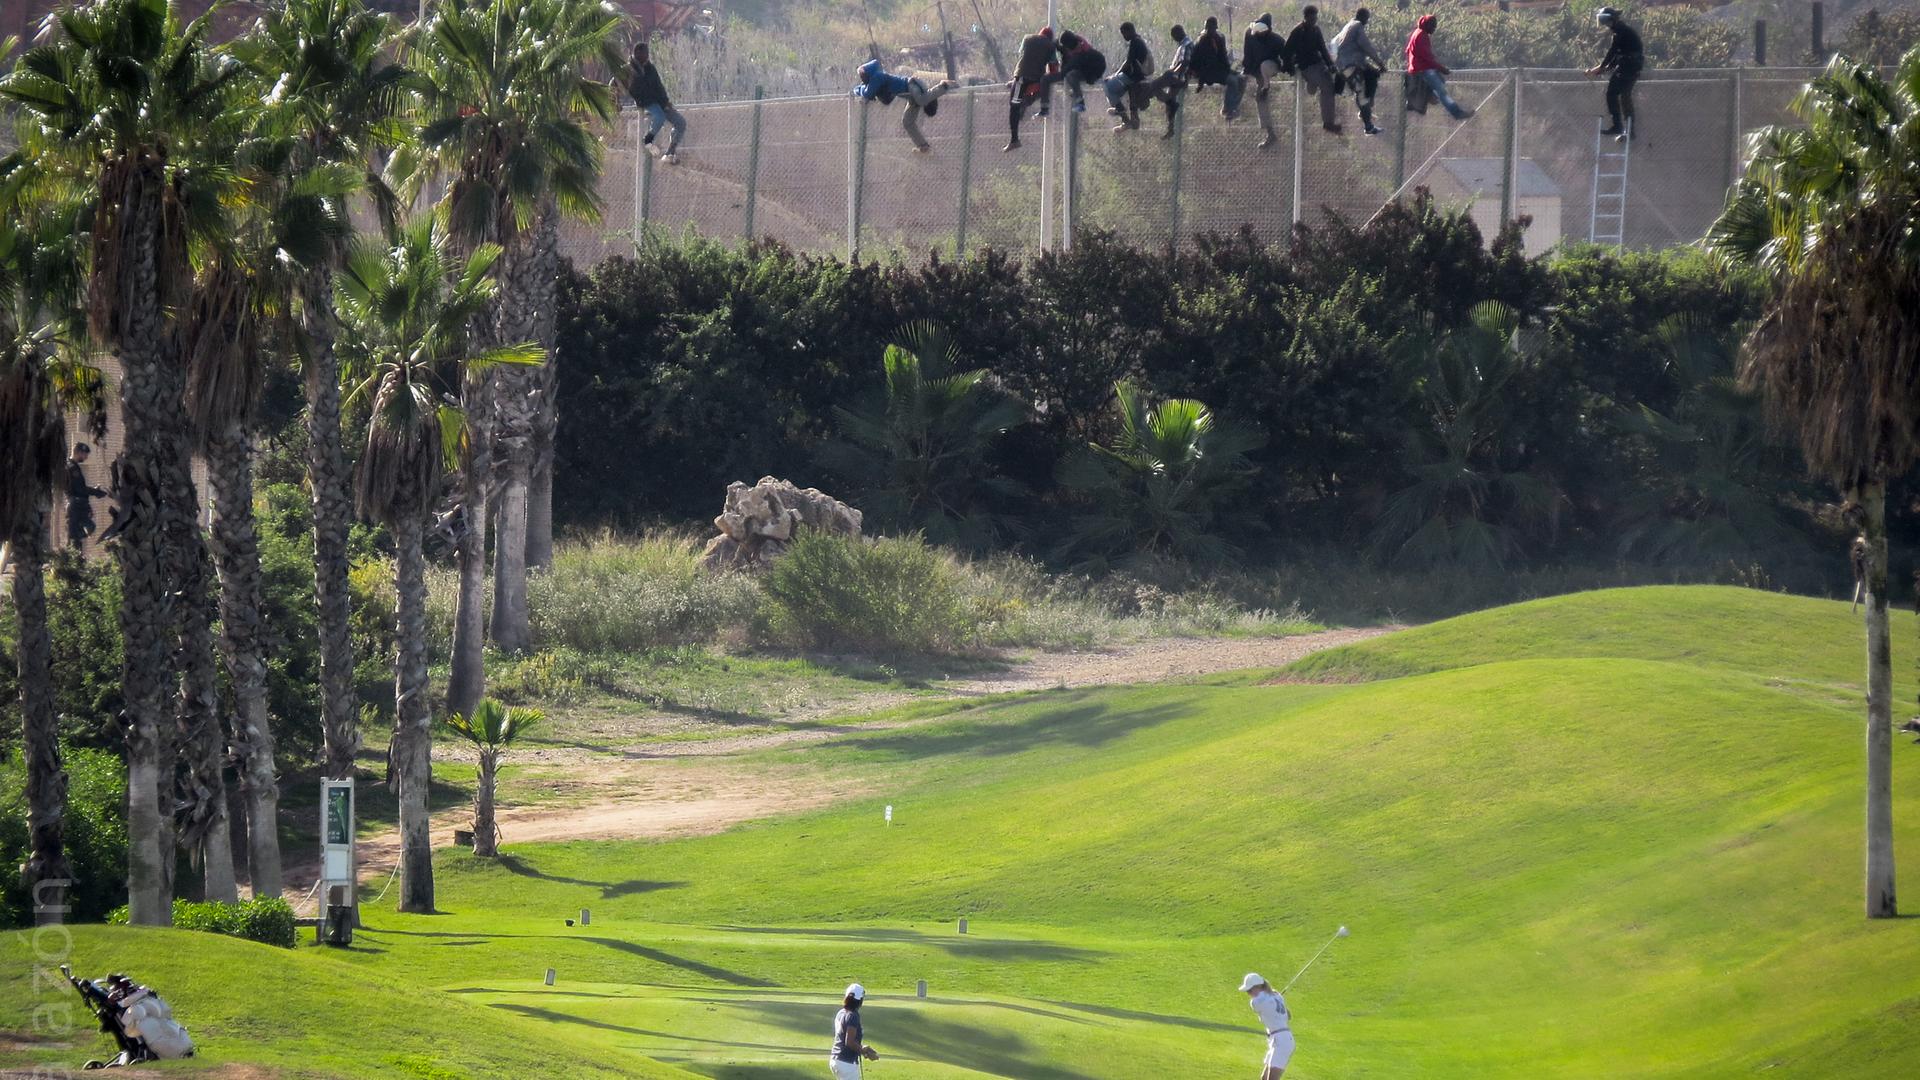 Ein Pärchen spielt unbekümmert Golf, obwohl direkt hinter ihm ein hoher Stacheldrahtzaun aufragt, ein Grenzzaun der spanischen Enklave Melilla in Marokko. Auf dem Zaun erkennt man einige afrikanische Männer, die gerade versuchen, hinüberzuflüchten.